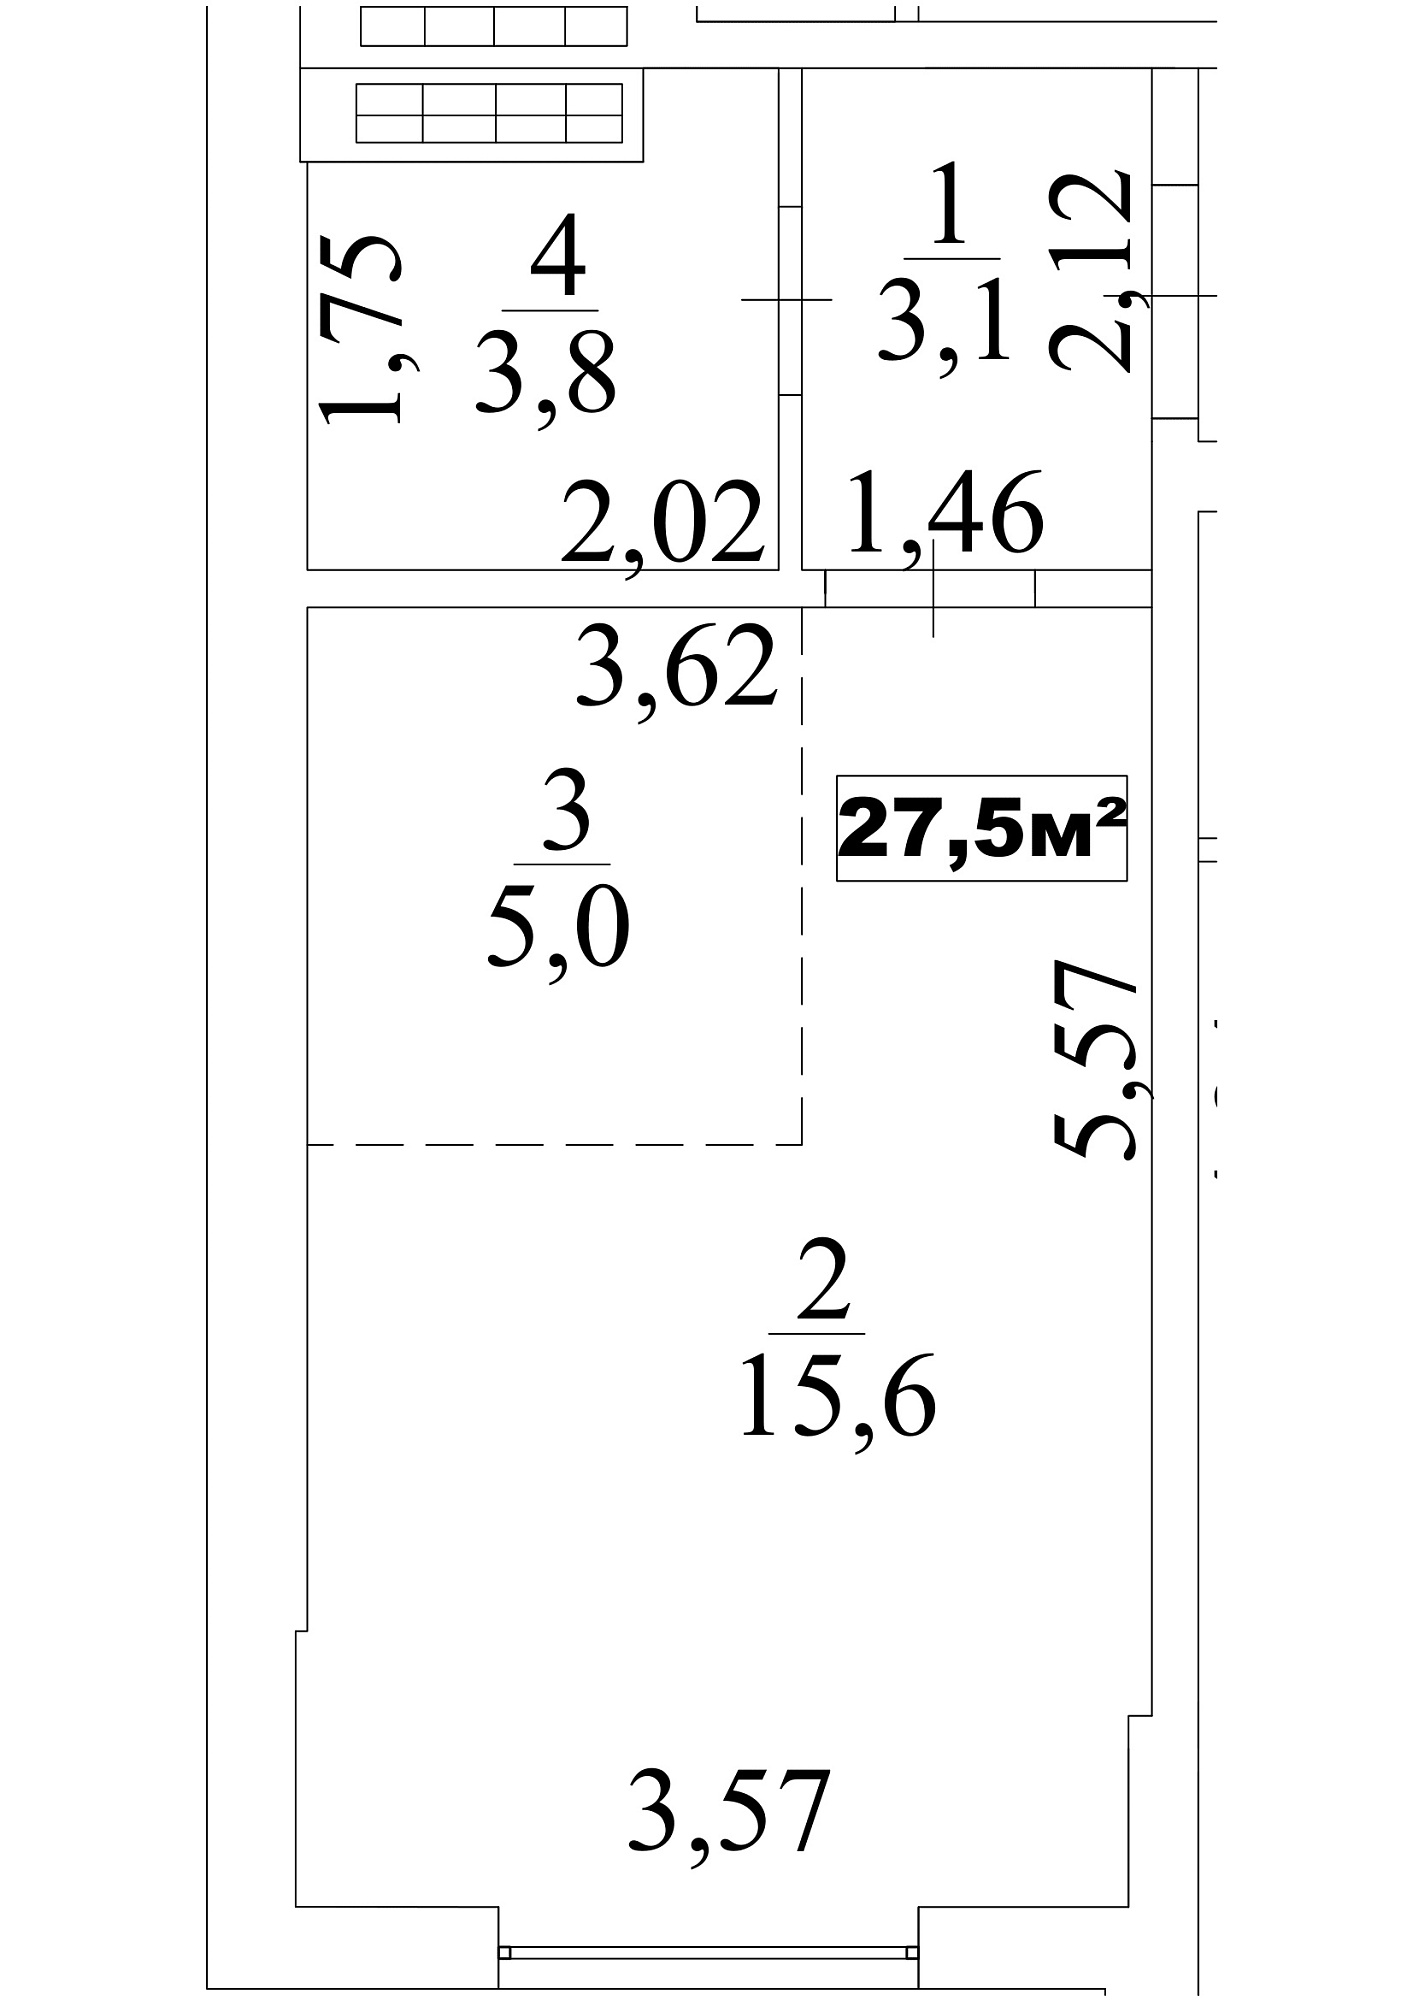 Планировка Smart-квартира площей 27.5м2, AB-10-03/0021а.